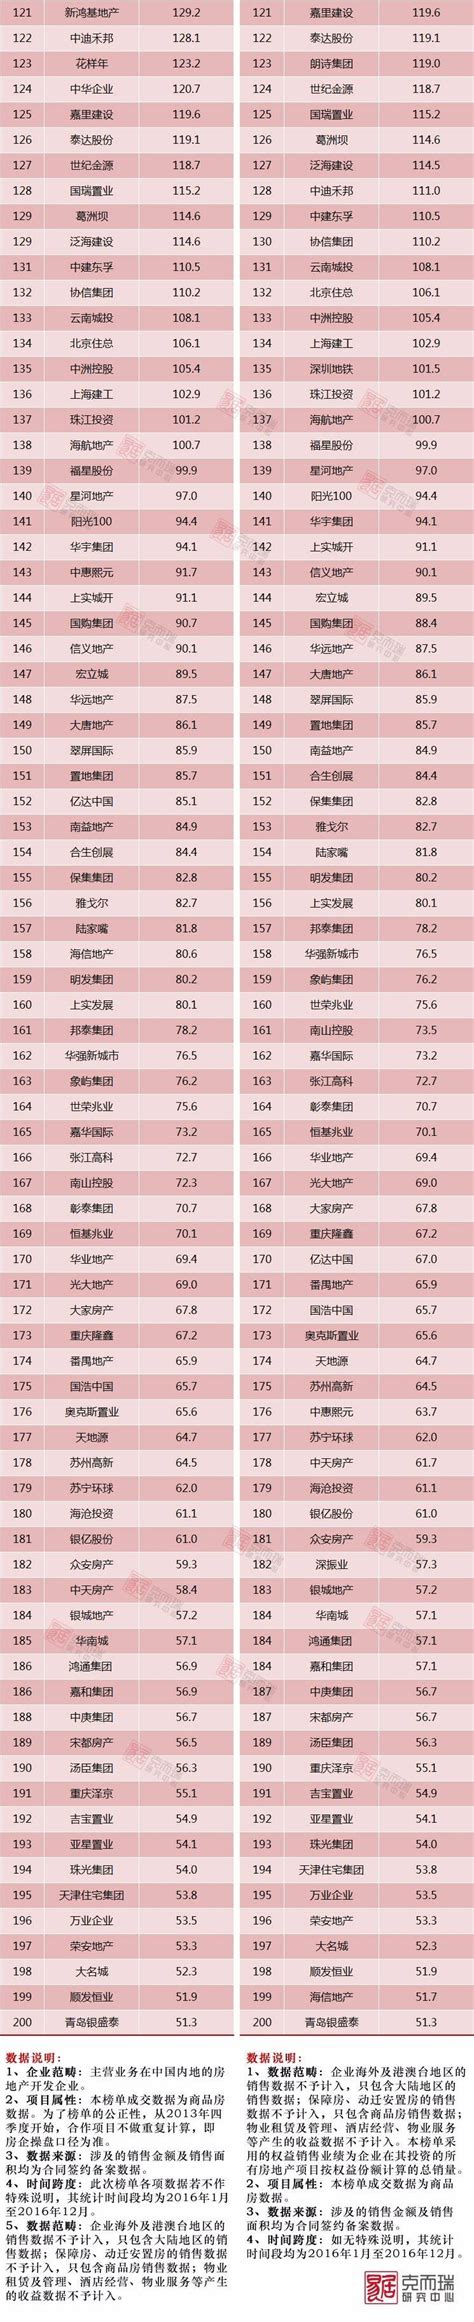 2019中国房地产排行榜_超强榜单丨2019中国房地产开发企业500强排行总汇(2)_排行榜